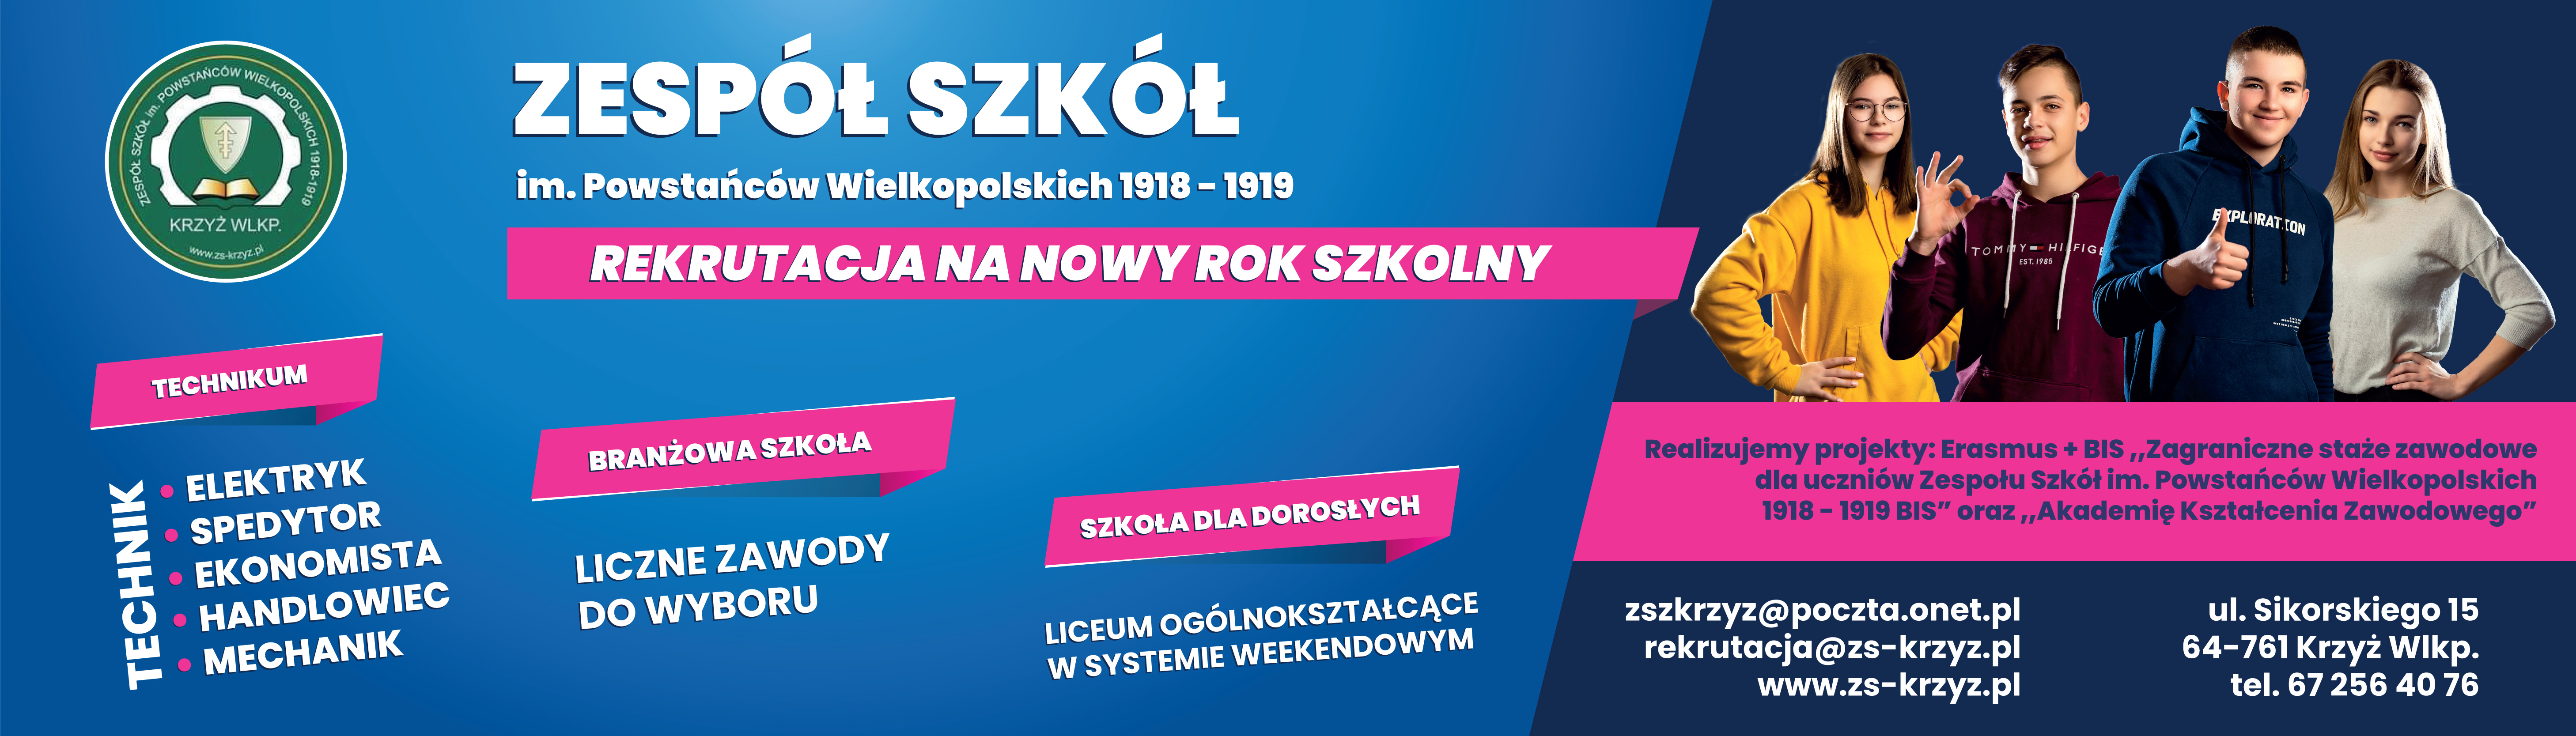 Zespół Szkół im. Powstańców Wielkopolskich 1918-1919 w Krzyżu Wielkopolskim